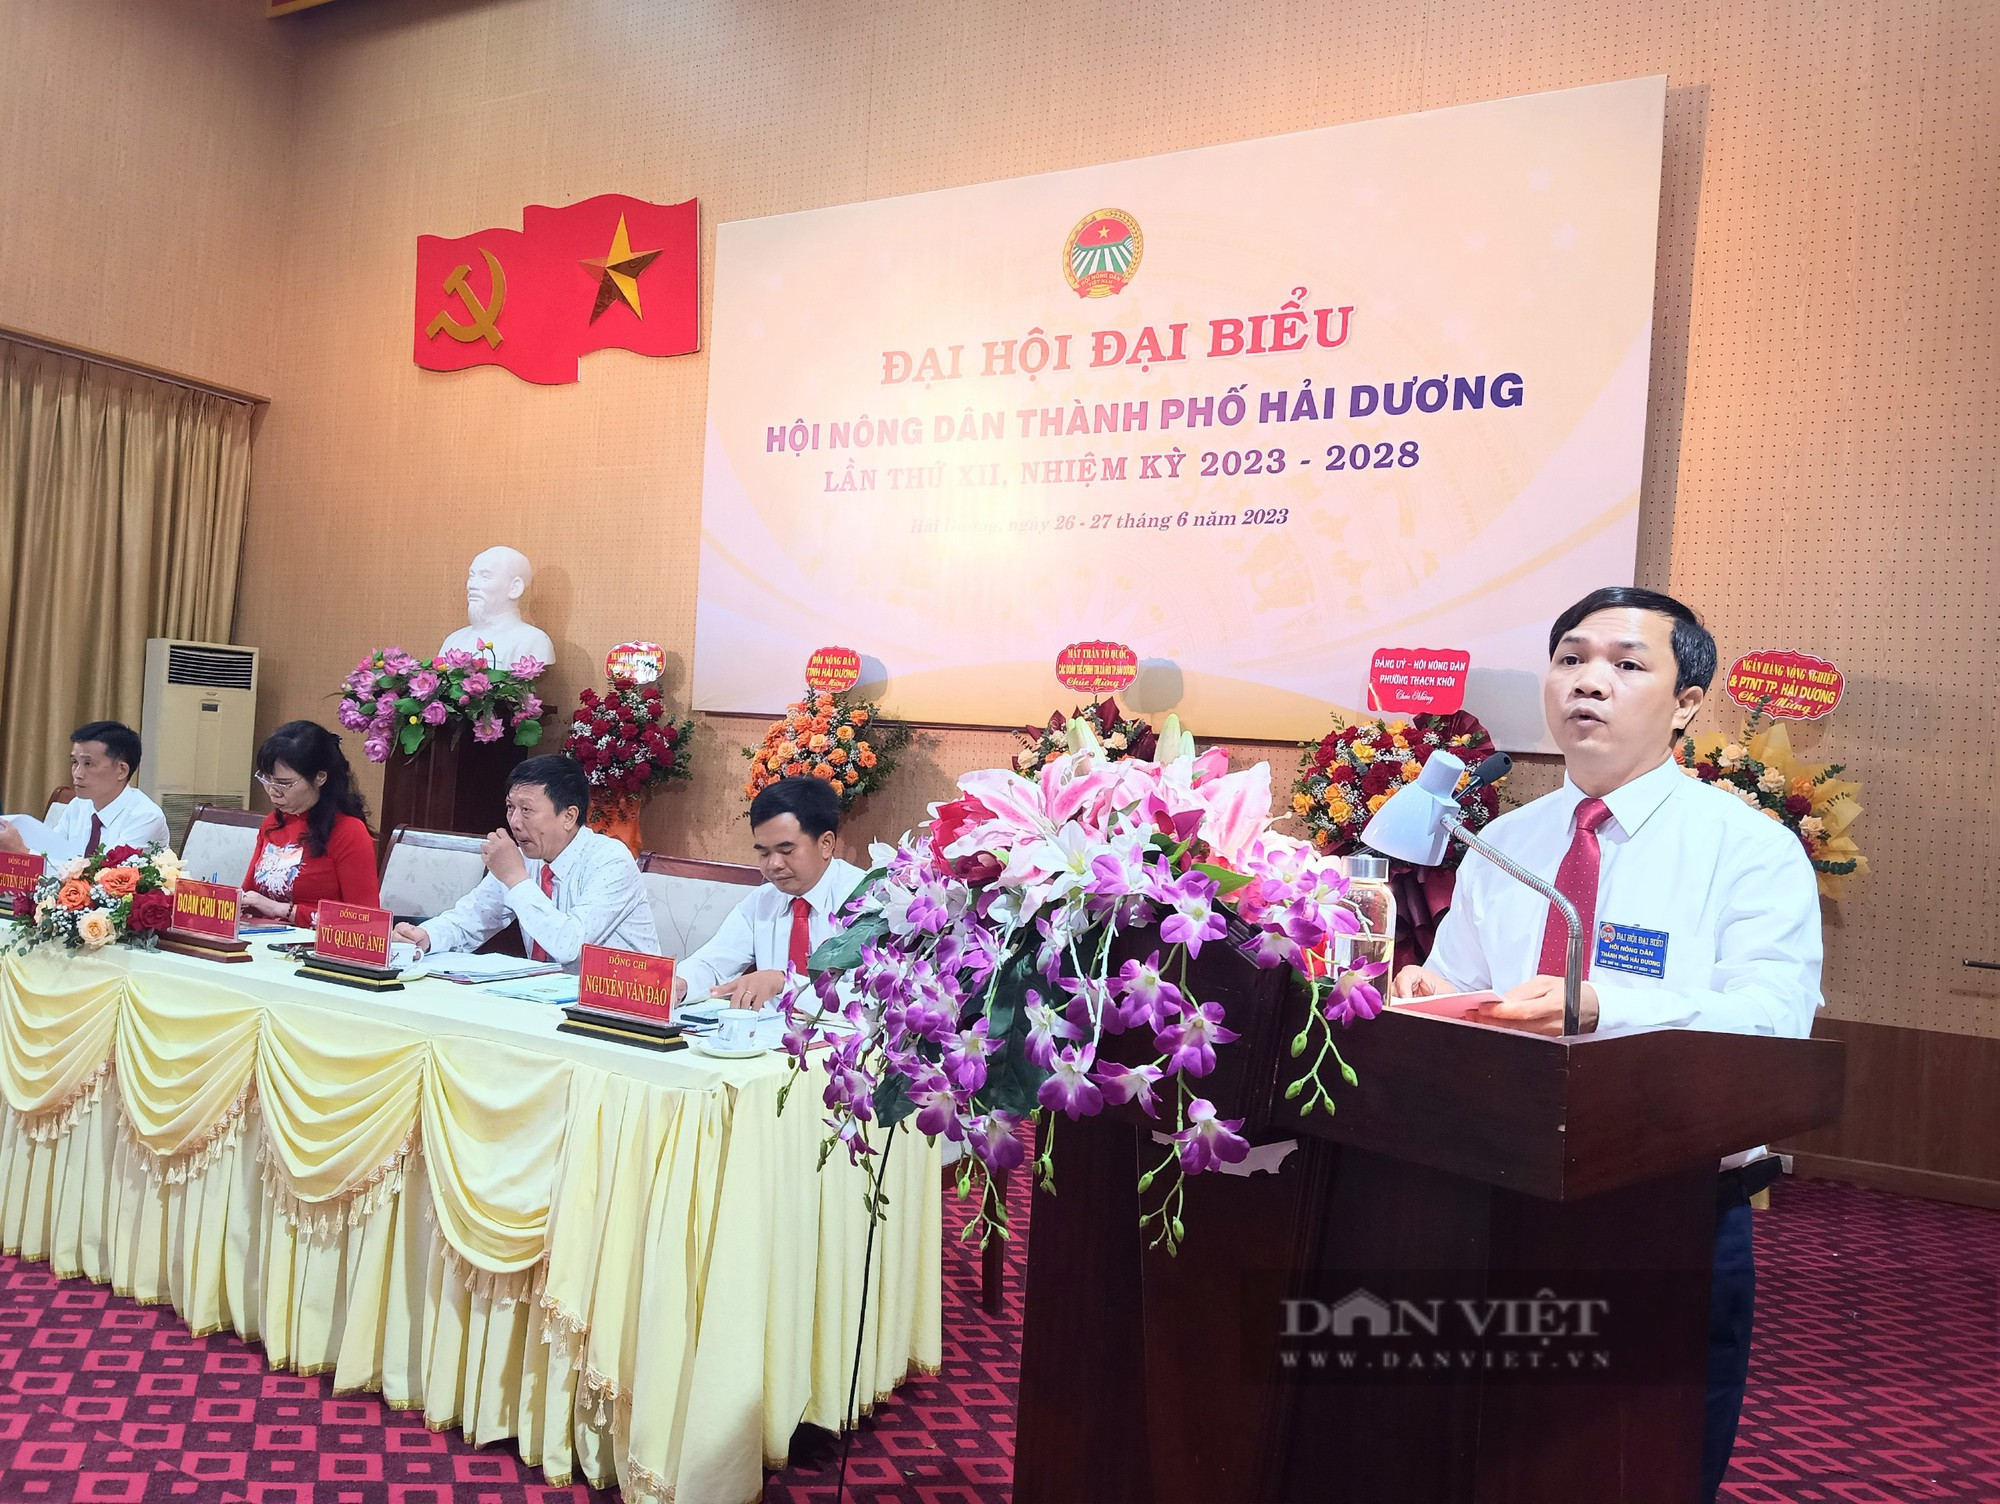 Đại hội Đại biểu Hội nông dân TP Hải Dương, bà Nguyễn Hải Yến tái đắc cử chức Chủ tịch - Ảnh 5.